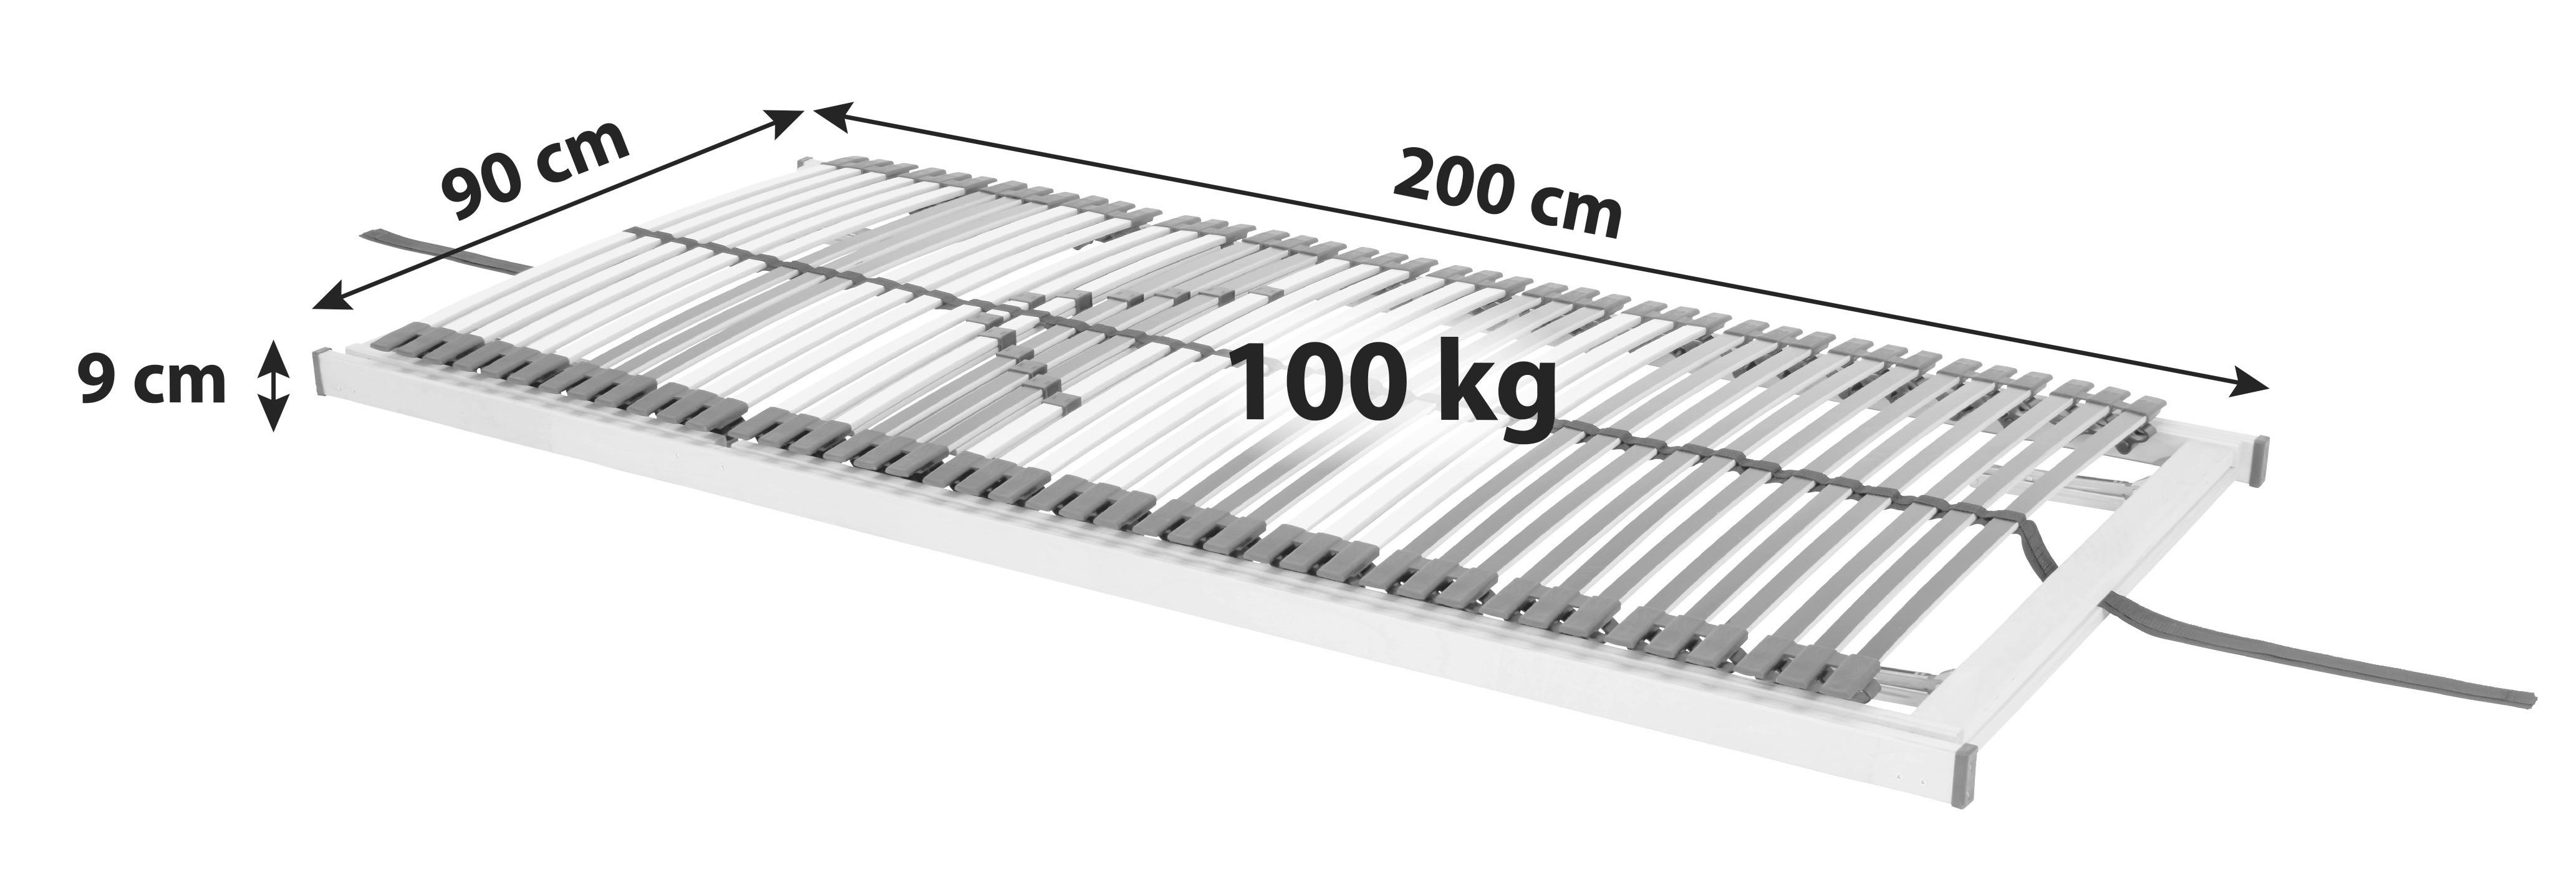 Lattenrost Primatex Comfort 90x200 cm verstellbar 7 Zonen - Schwarz/Weiß, Holz (90/200cm) - Primatex